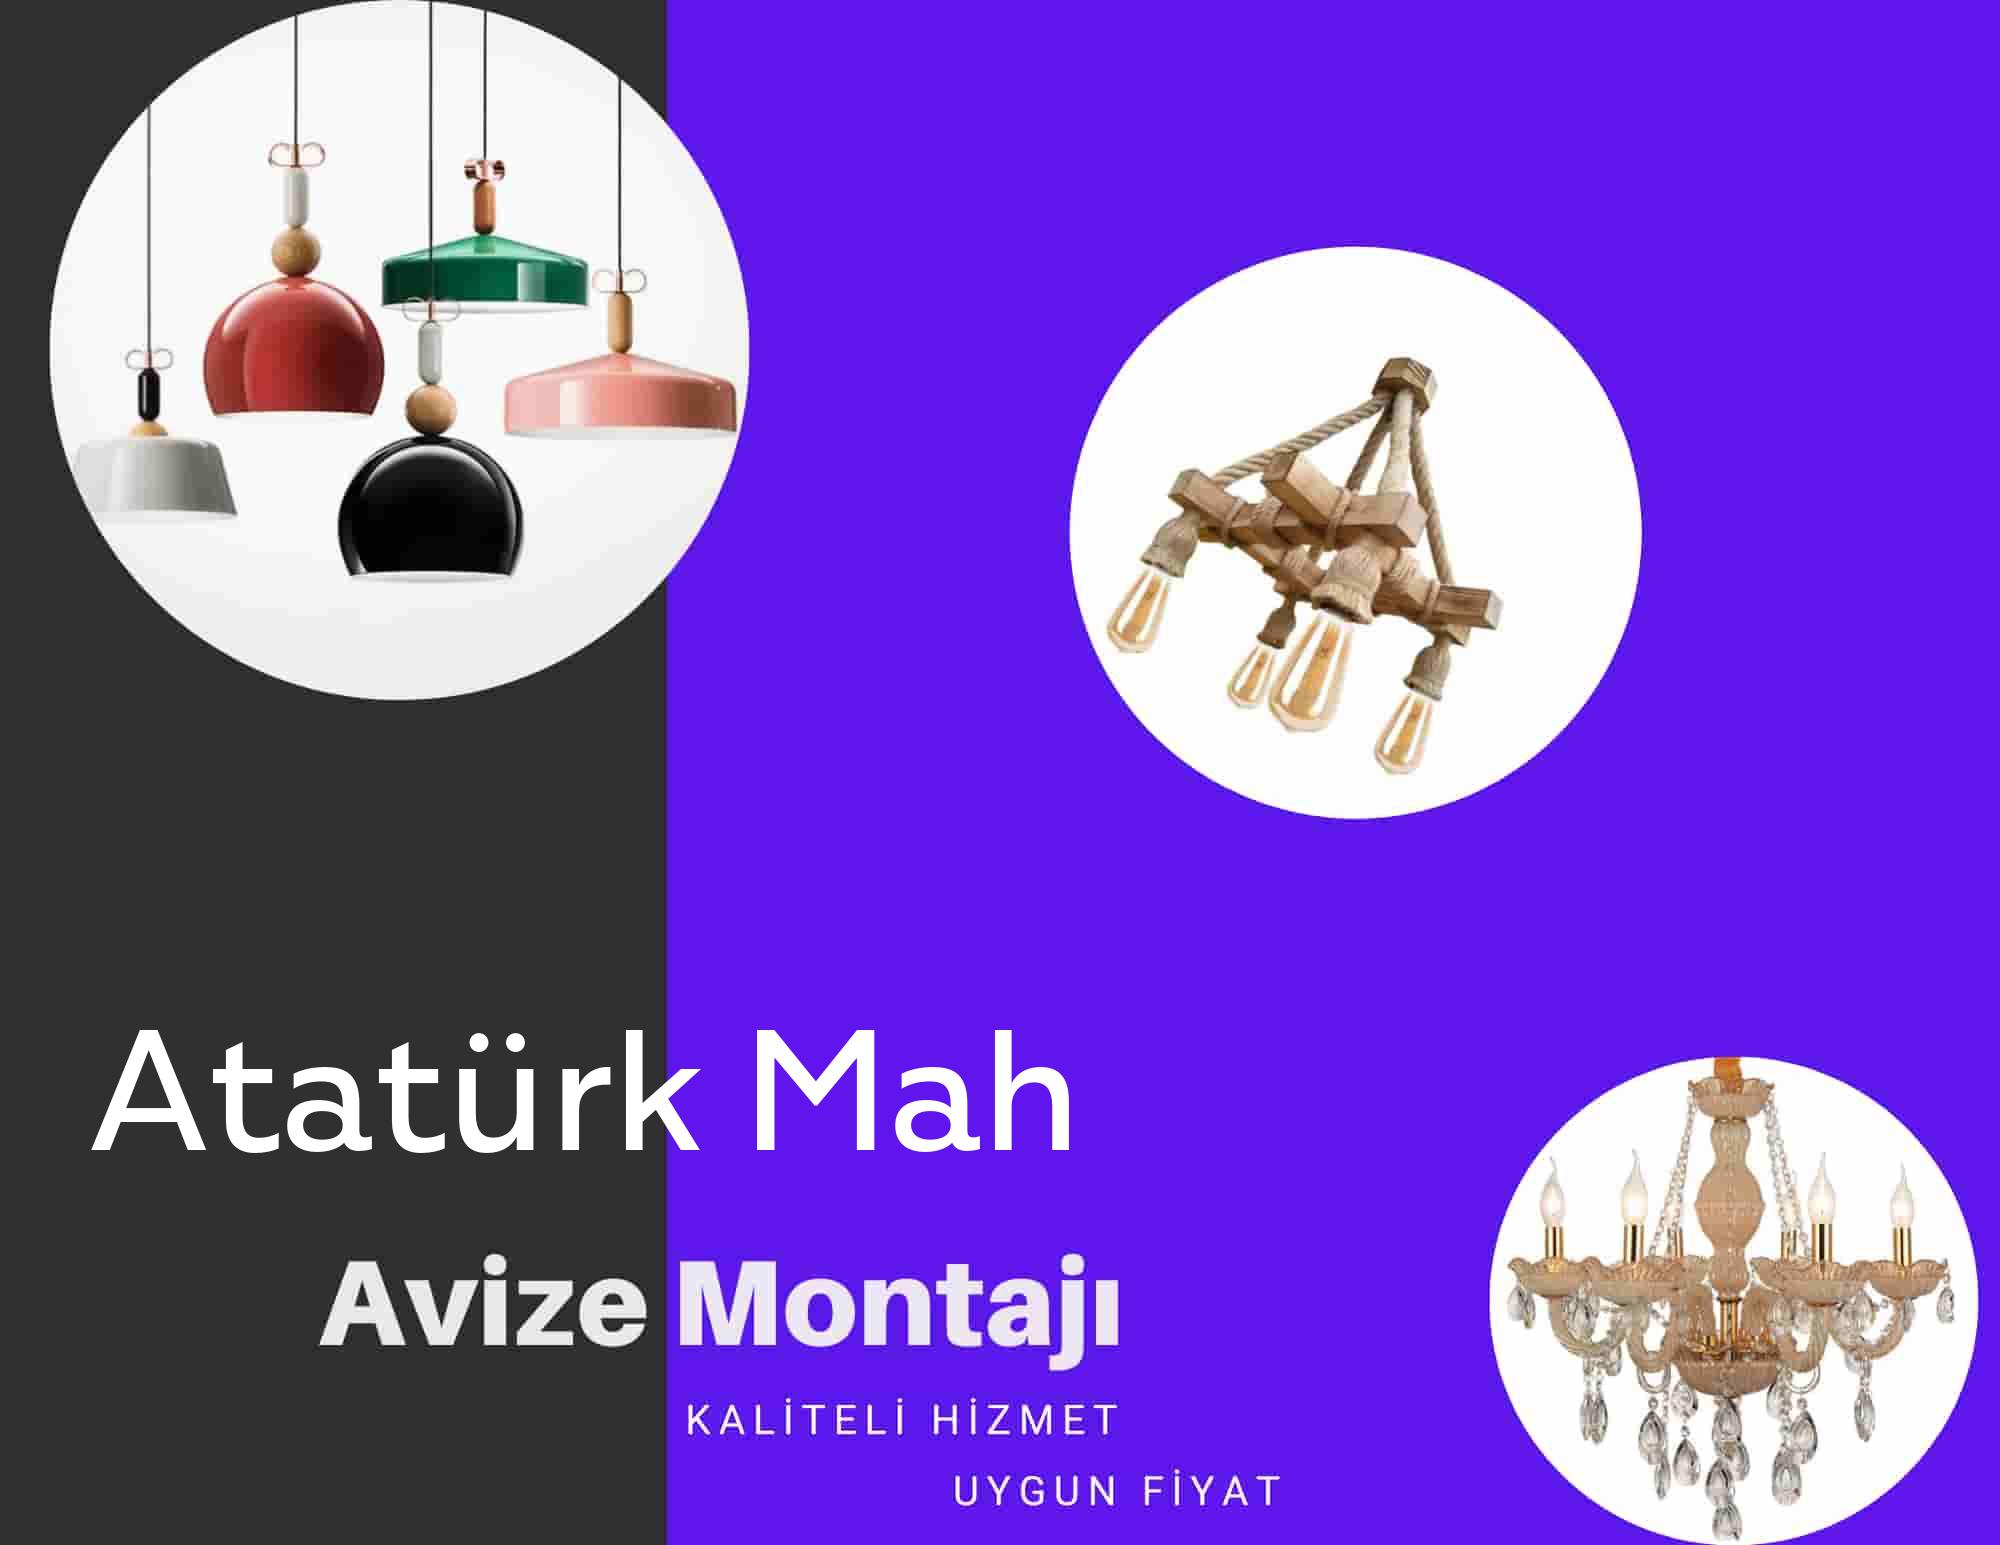 Atatürk Mahde avize montajı yapan yerler arıyorsanız elektrikcicagir anında size profesyonel avize montajı ustasını yönlendirir.